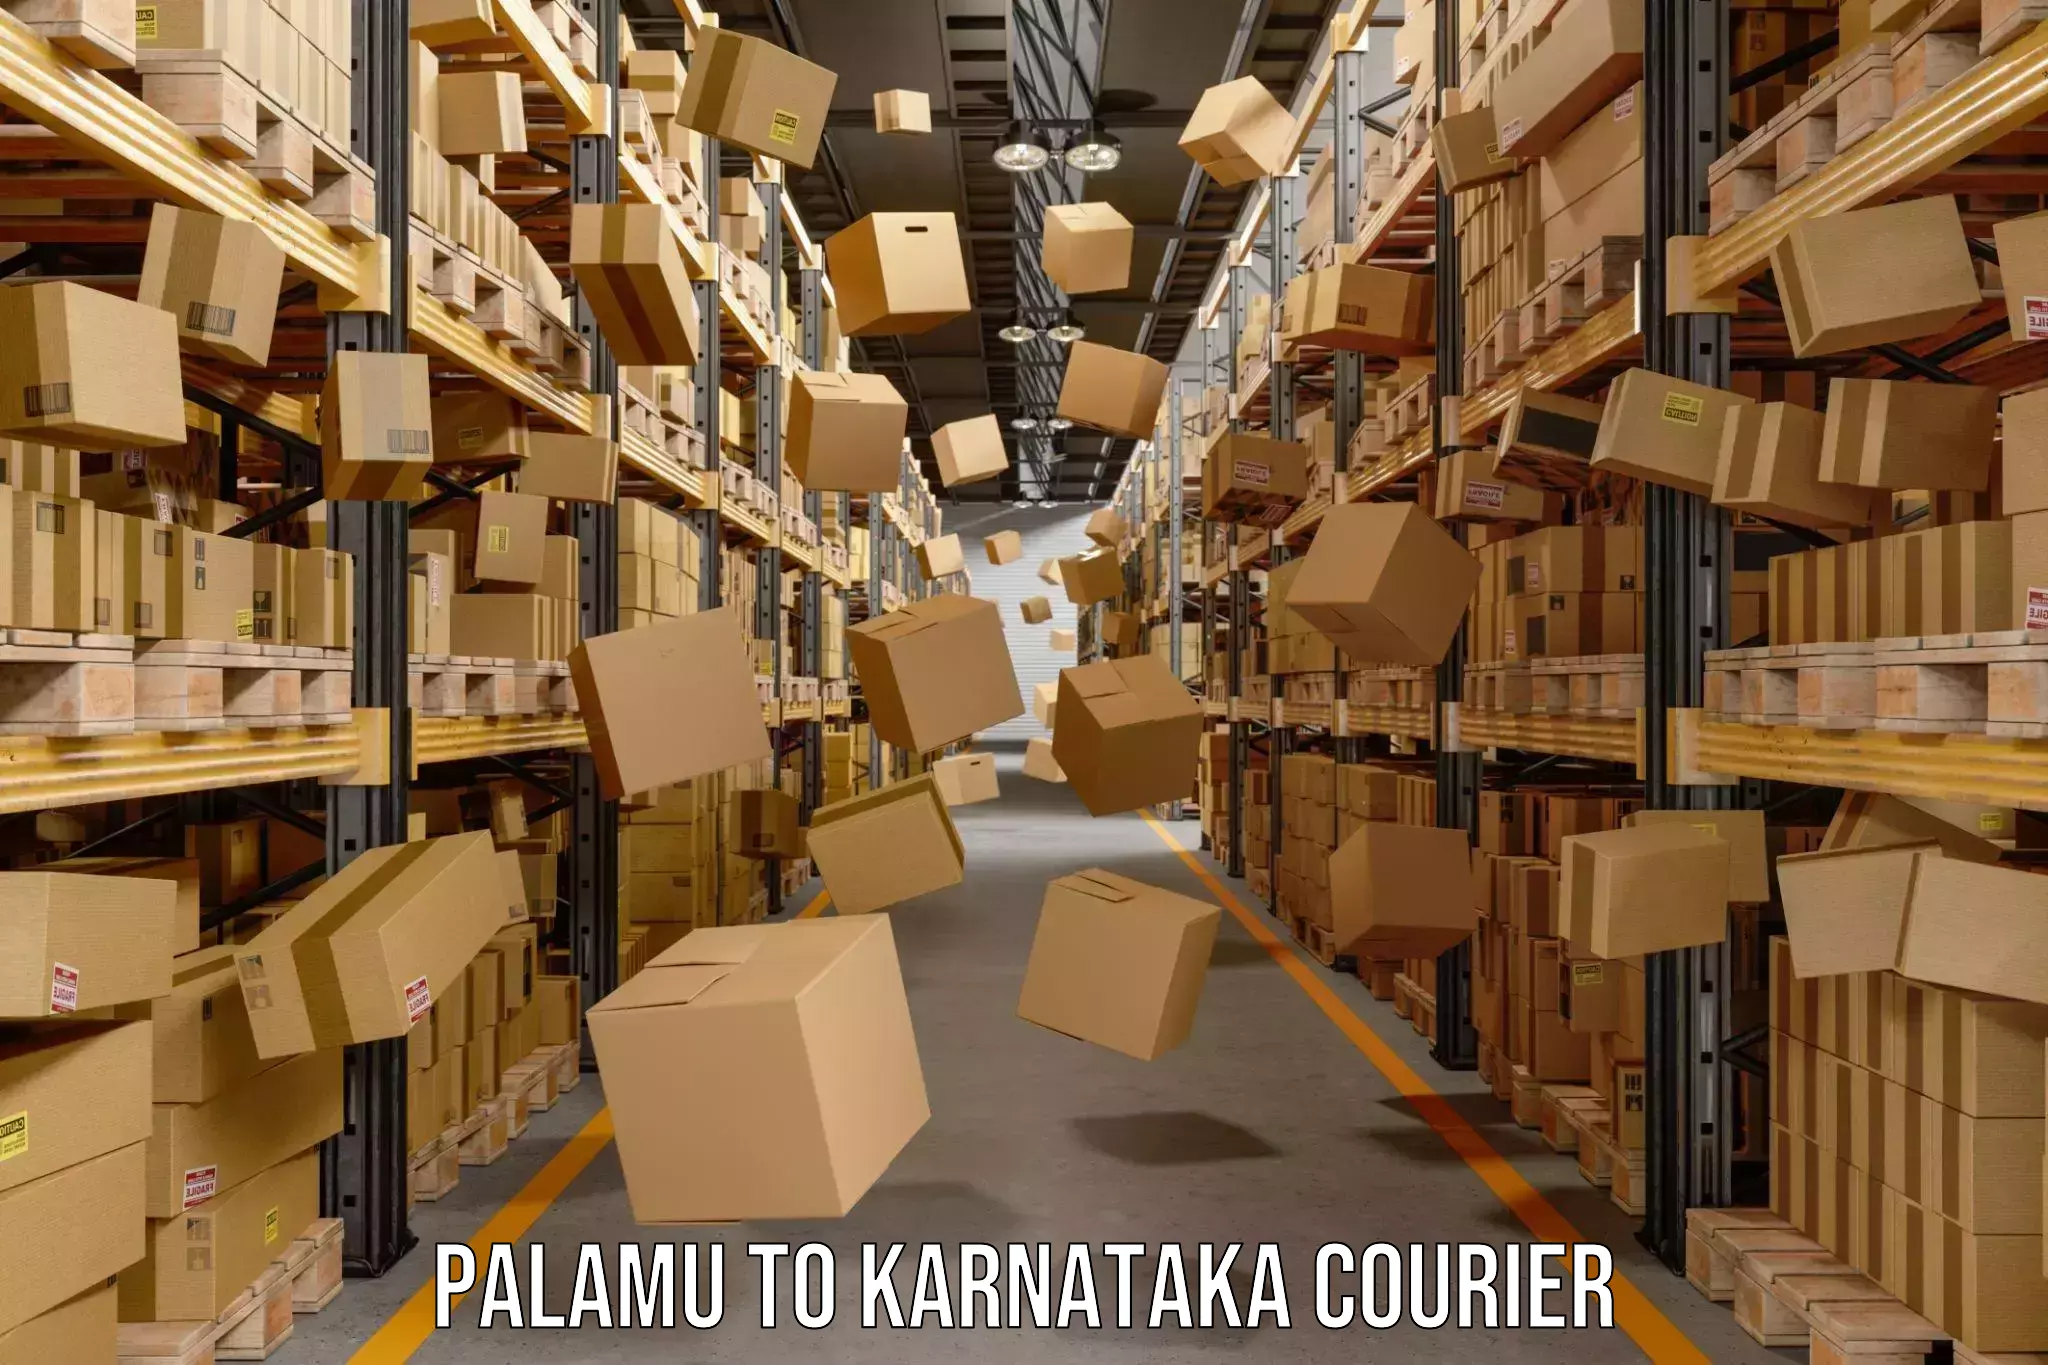 Weekend courier service Palamu to Yenepoya Mangalore